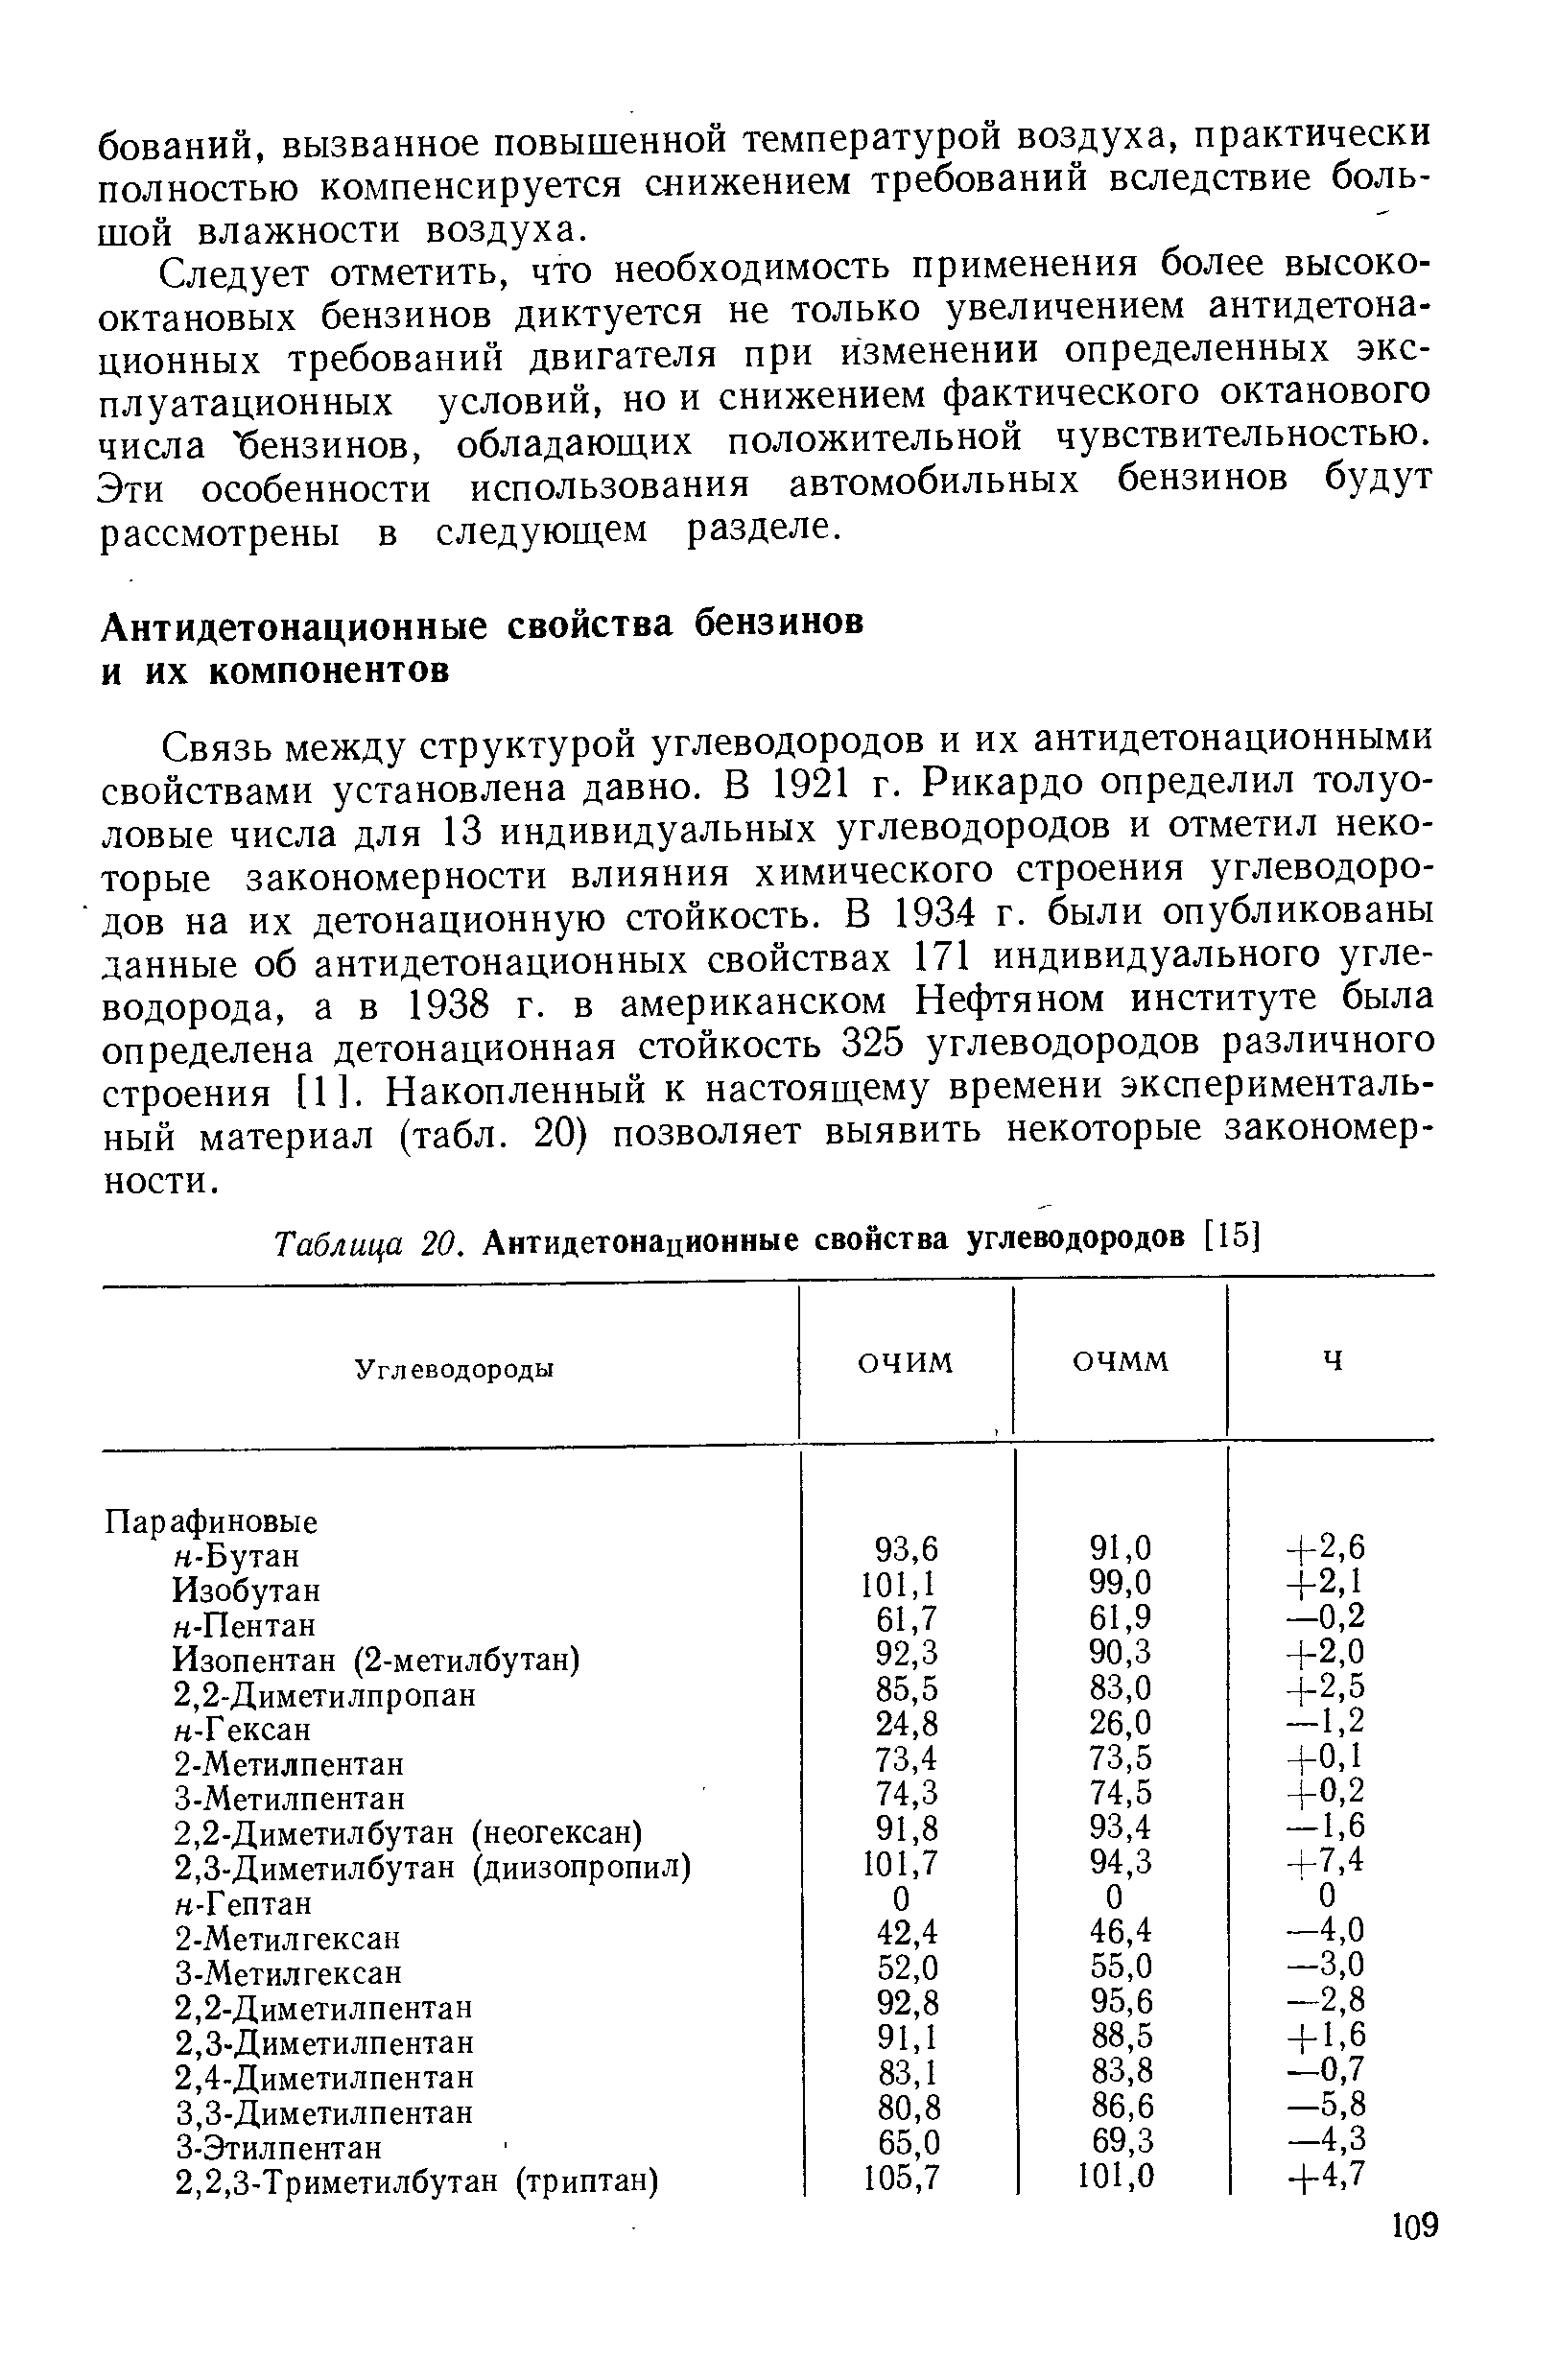 Связь между структурой углеводородов и их антидетонационными свойствами установлена давно. В 1921 г. Рикардо определил толуоловые числа для 13 индивидуальных углеводородов и отметил некоторые закономерности влияния химического строения углеводородов на их детонационную стойкость. В 1934 г. были опубликованы данные об антидетонационных свойствах 171 индивидуального углеводорода, а в 1938 г. в американском Нефтяном институте была определена детонационная стойкость 325 углеводородов различного строения [1]. Накопленный к настоящему времени экспериментальный материал (табл. 20) позволяет выявить некоторые закономерности.